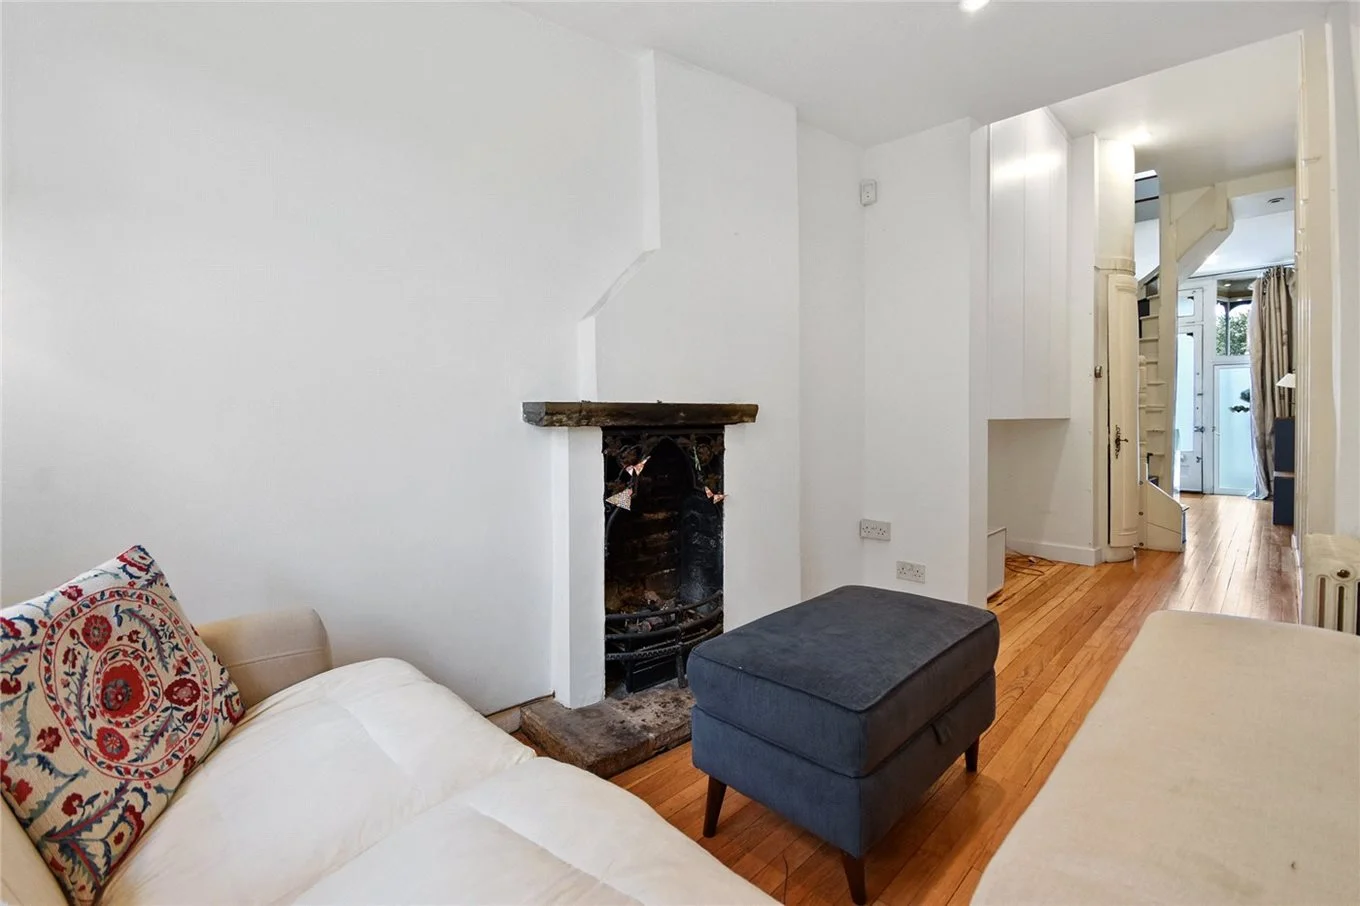 Для минималистов: в Лондоне продают самый узкий дом шириной 1,8 метра - фото 491905